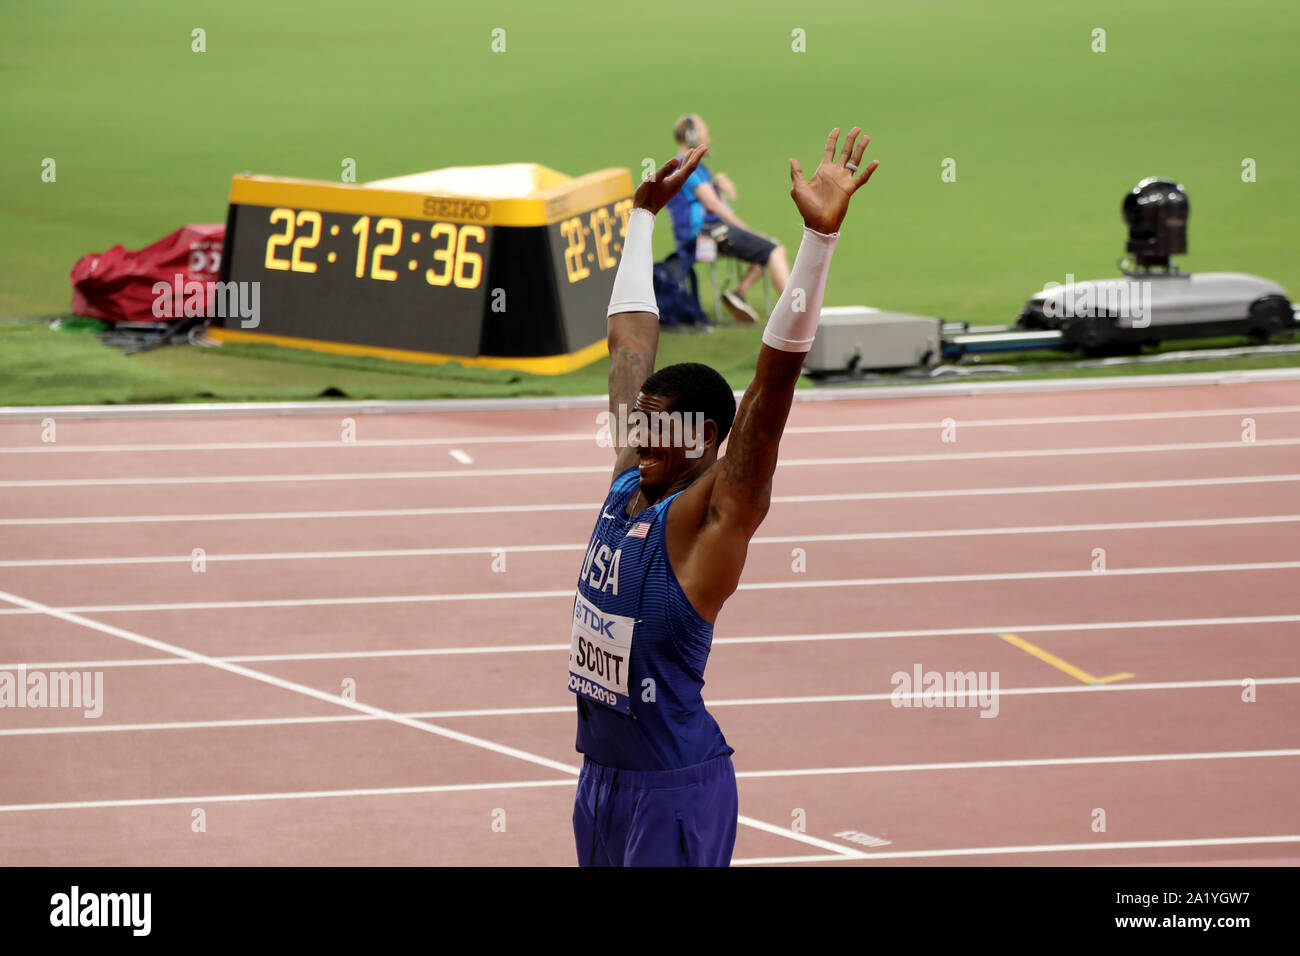 Doha/Katar - September 29, 2019: Donald Scott der USA erstreckt sich in der Vorbereitung für seinen nächsten springen während der Endrunde der Männer Dreisprung als Teil der IAAF Leichtathletik WM 2019 Stockfoto